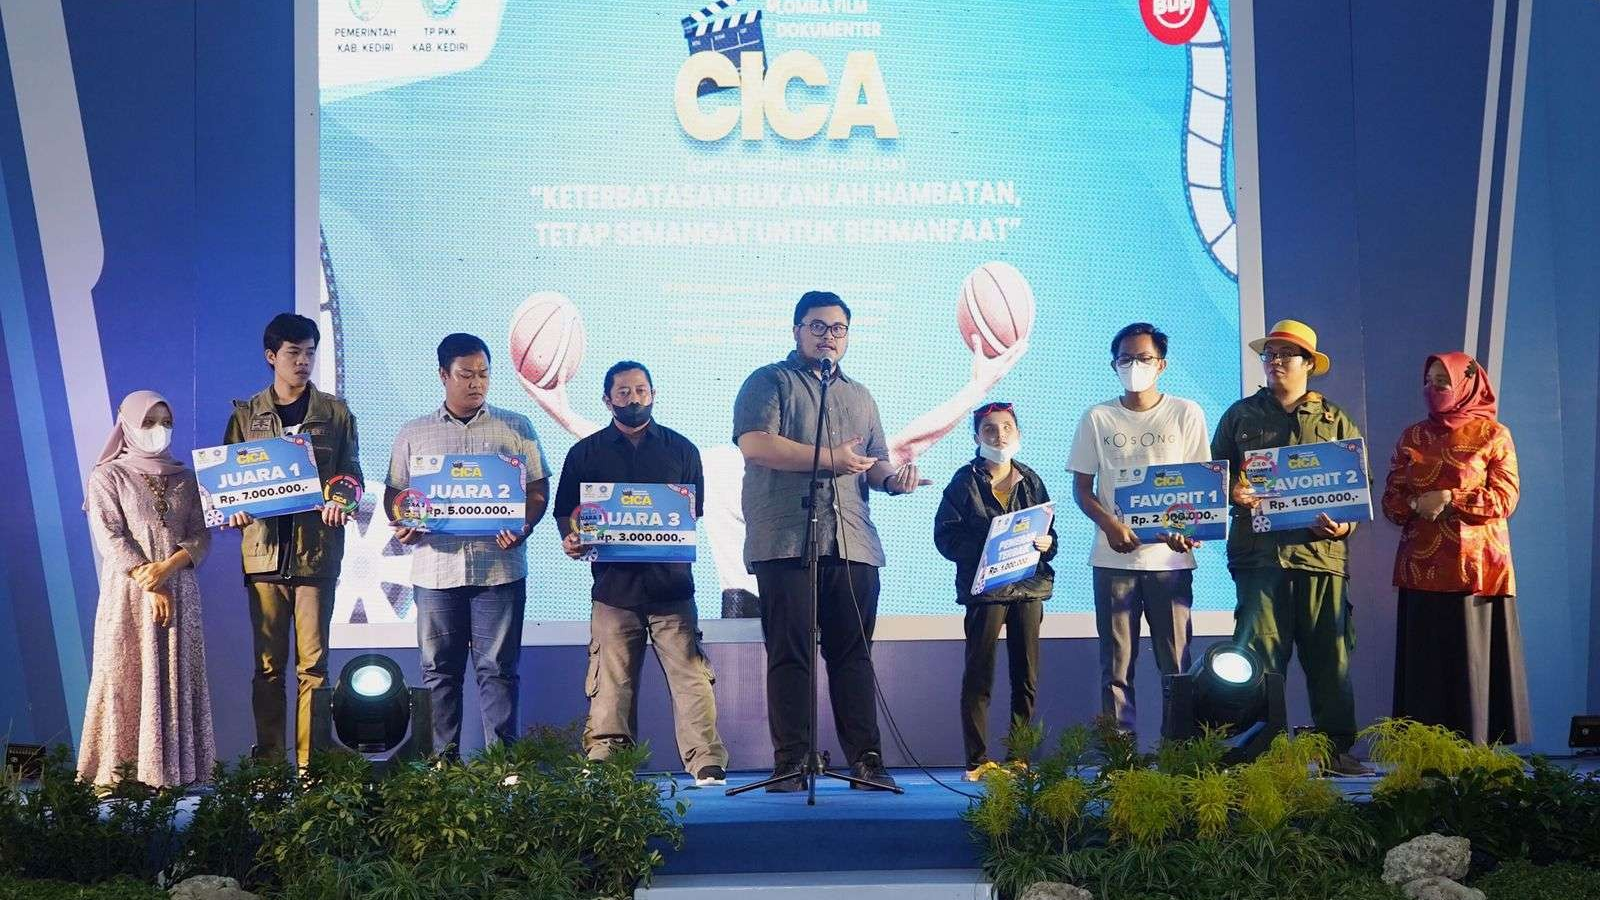 Lewat Film Dokumenter CICA, Bupati Kediri Angkat Perjuangan Disabilitas (Foto: Kominfo Kabupaten Kediri)